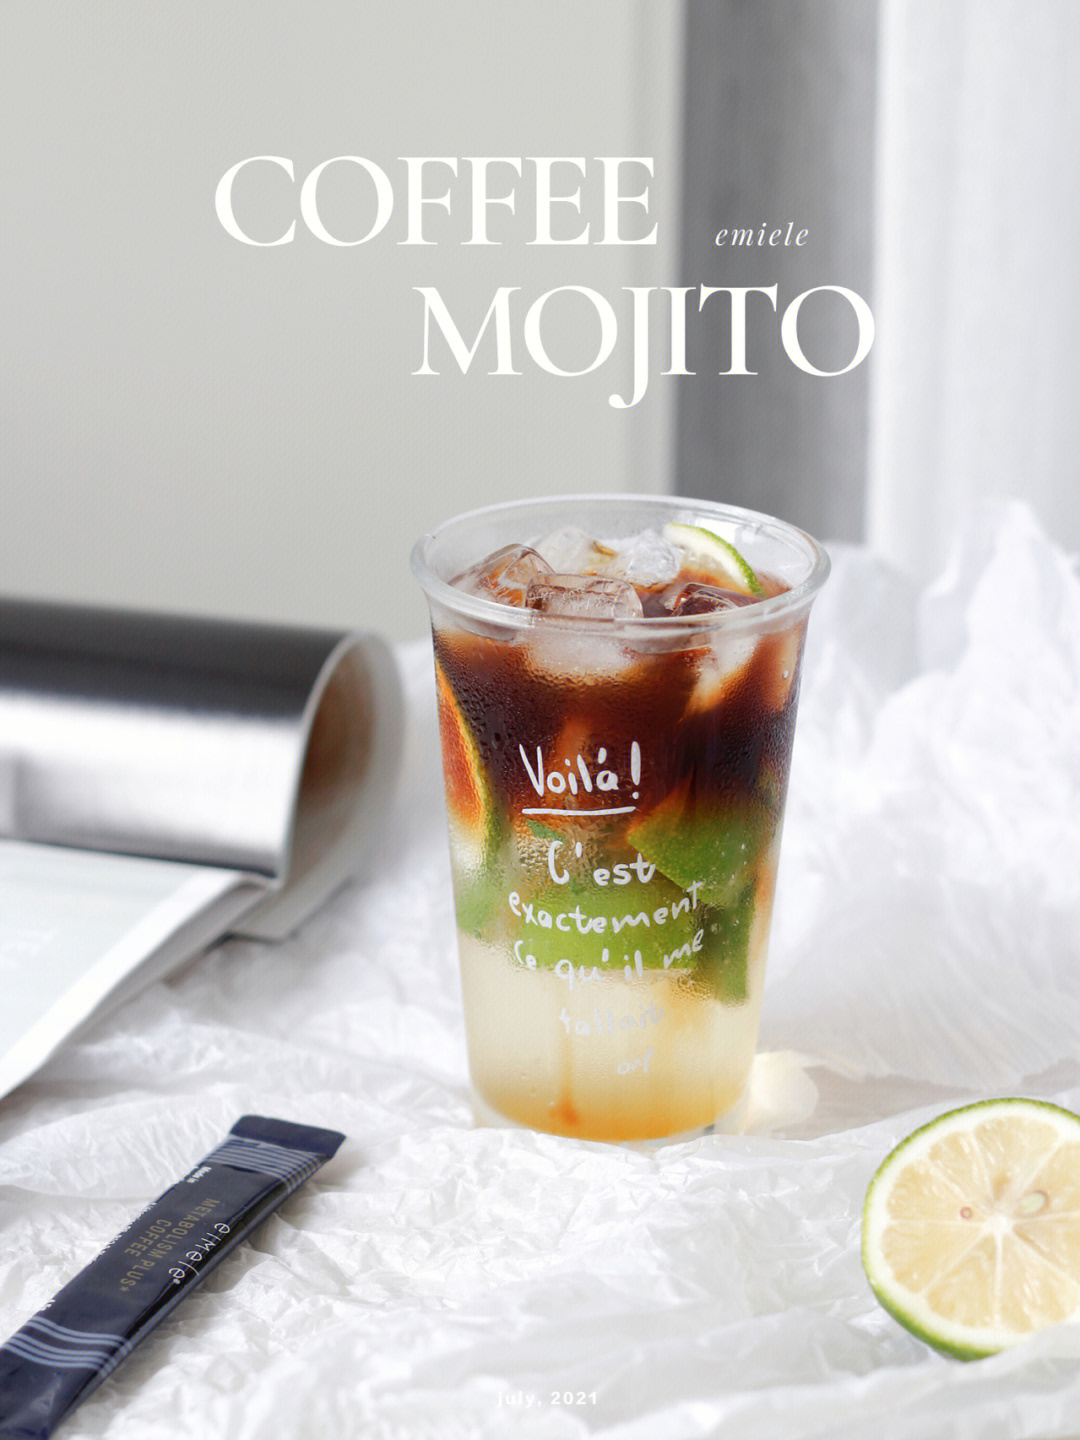 来一杯咖啡莫吉托mojito